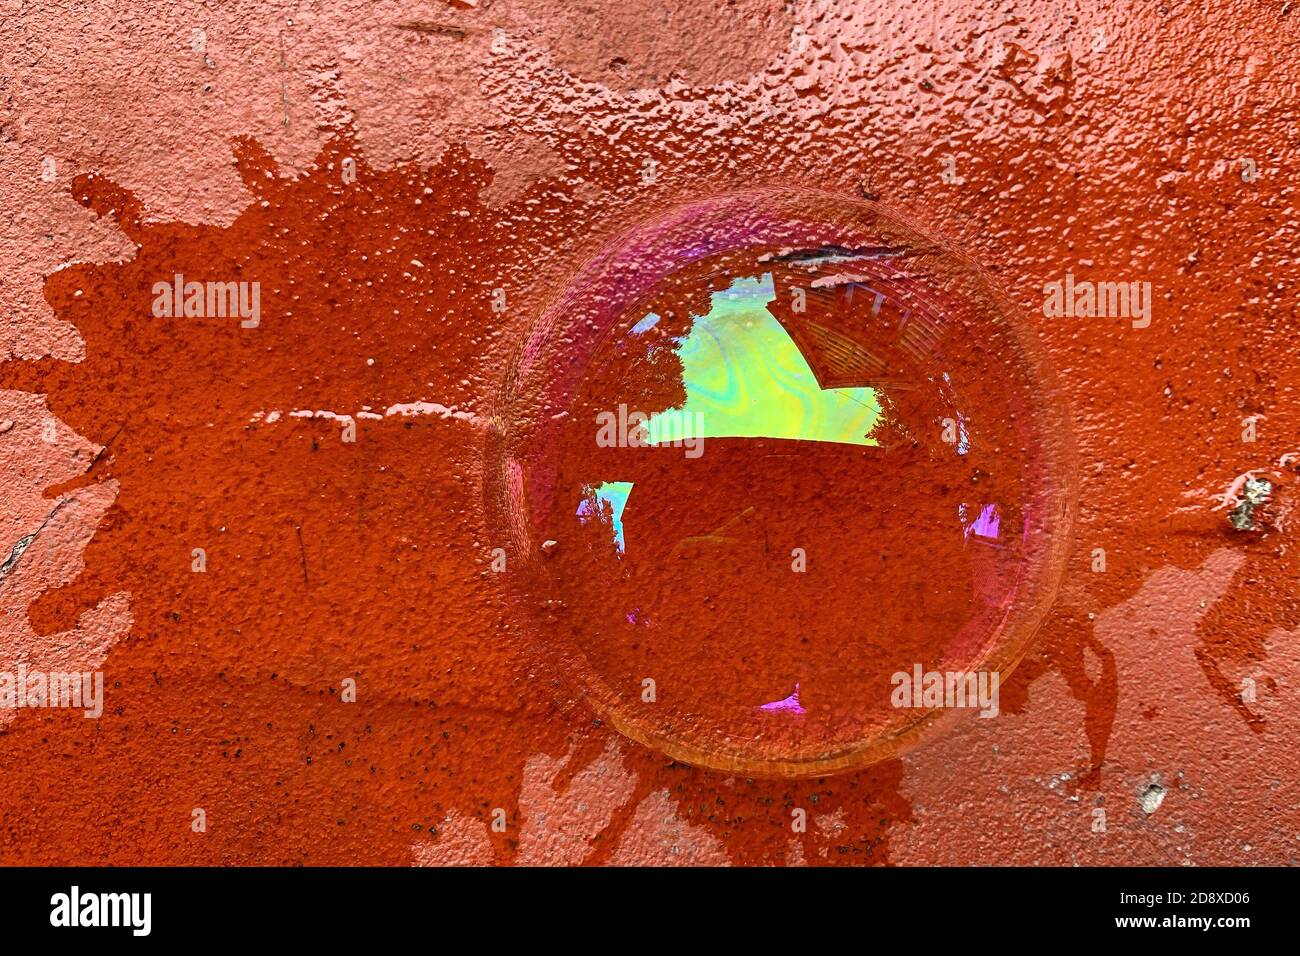 La vista dall'alto di una mezza bolla di sapone si trova su un mattone rosso incrinato. Acqua saponata con riflessi colorati Foto Stock